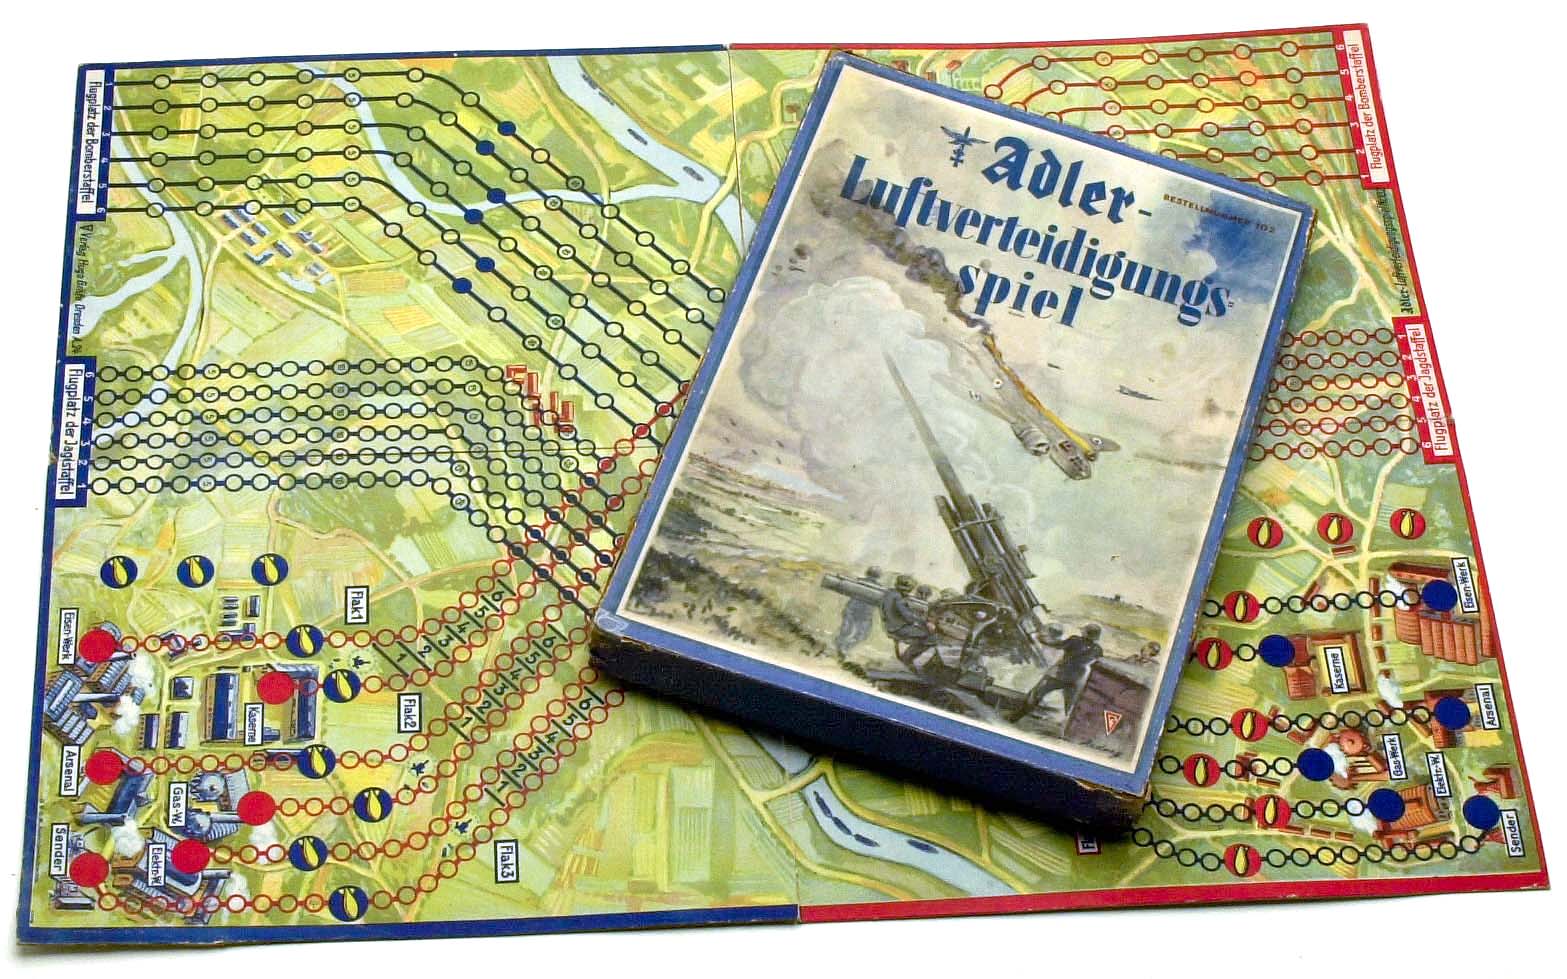 Adler Luftverteidigungsspiel (Adler Air Defence game)